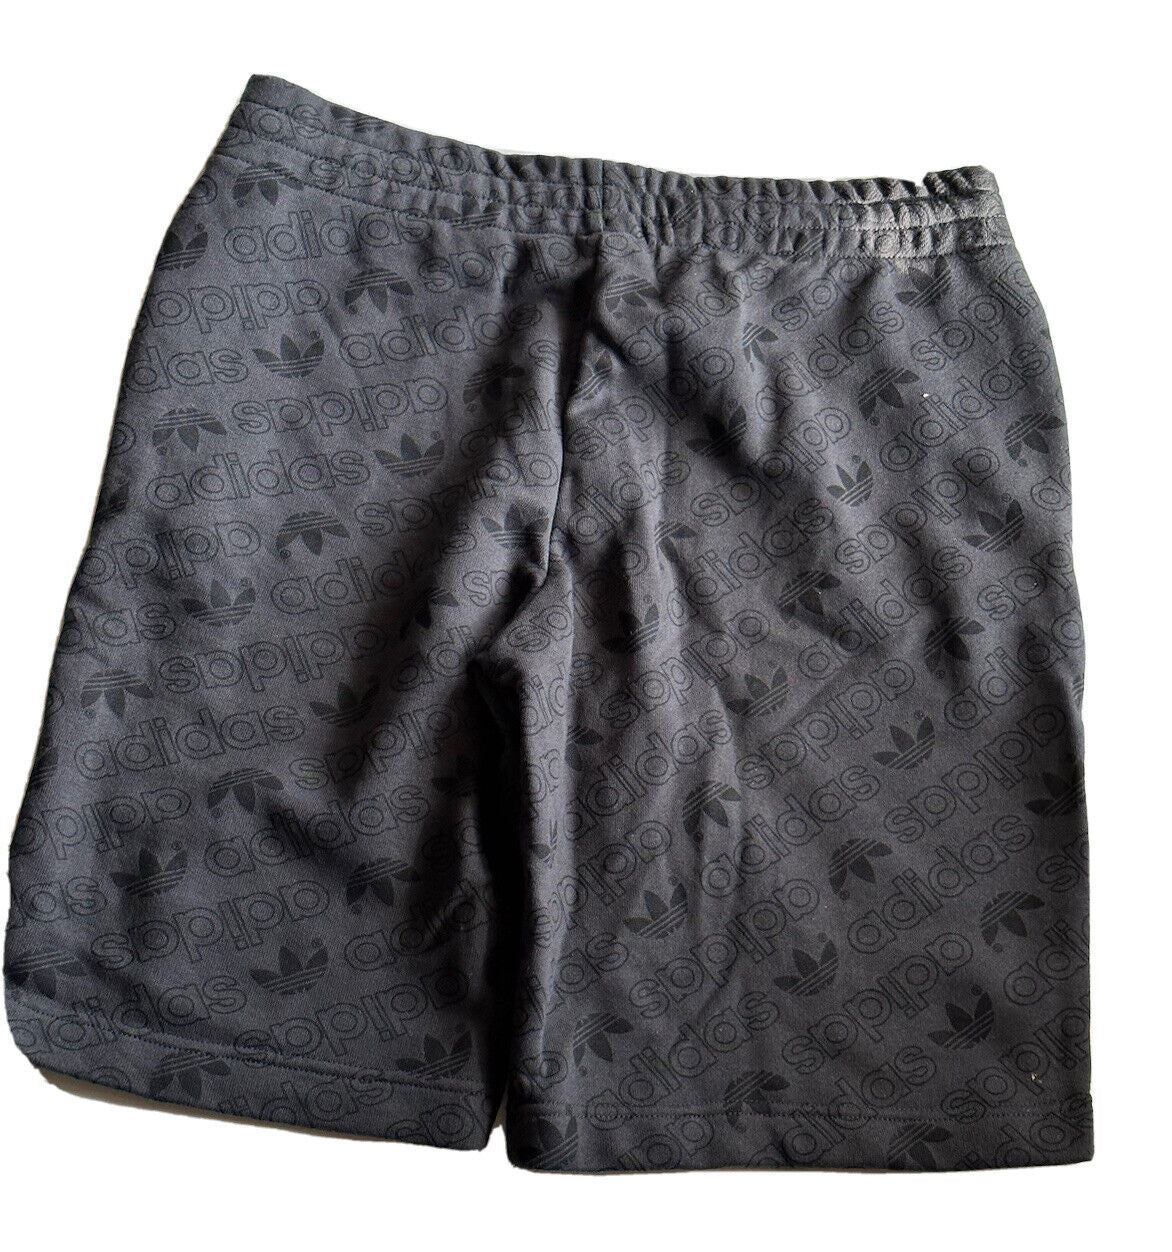 NWT $60 Adidas Men's Black Shorts Large